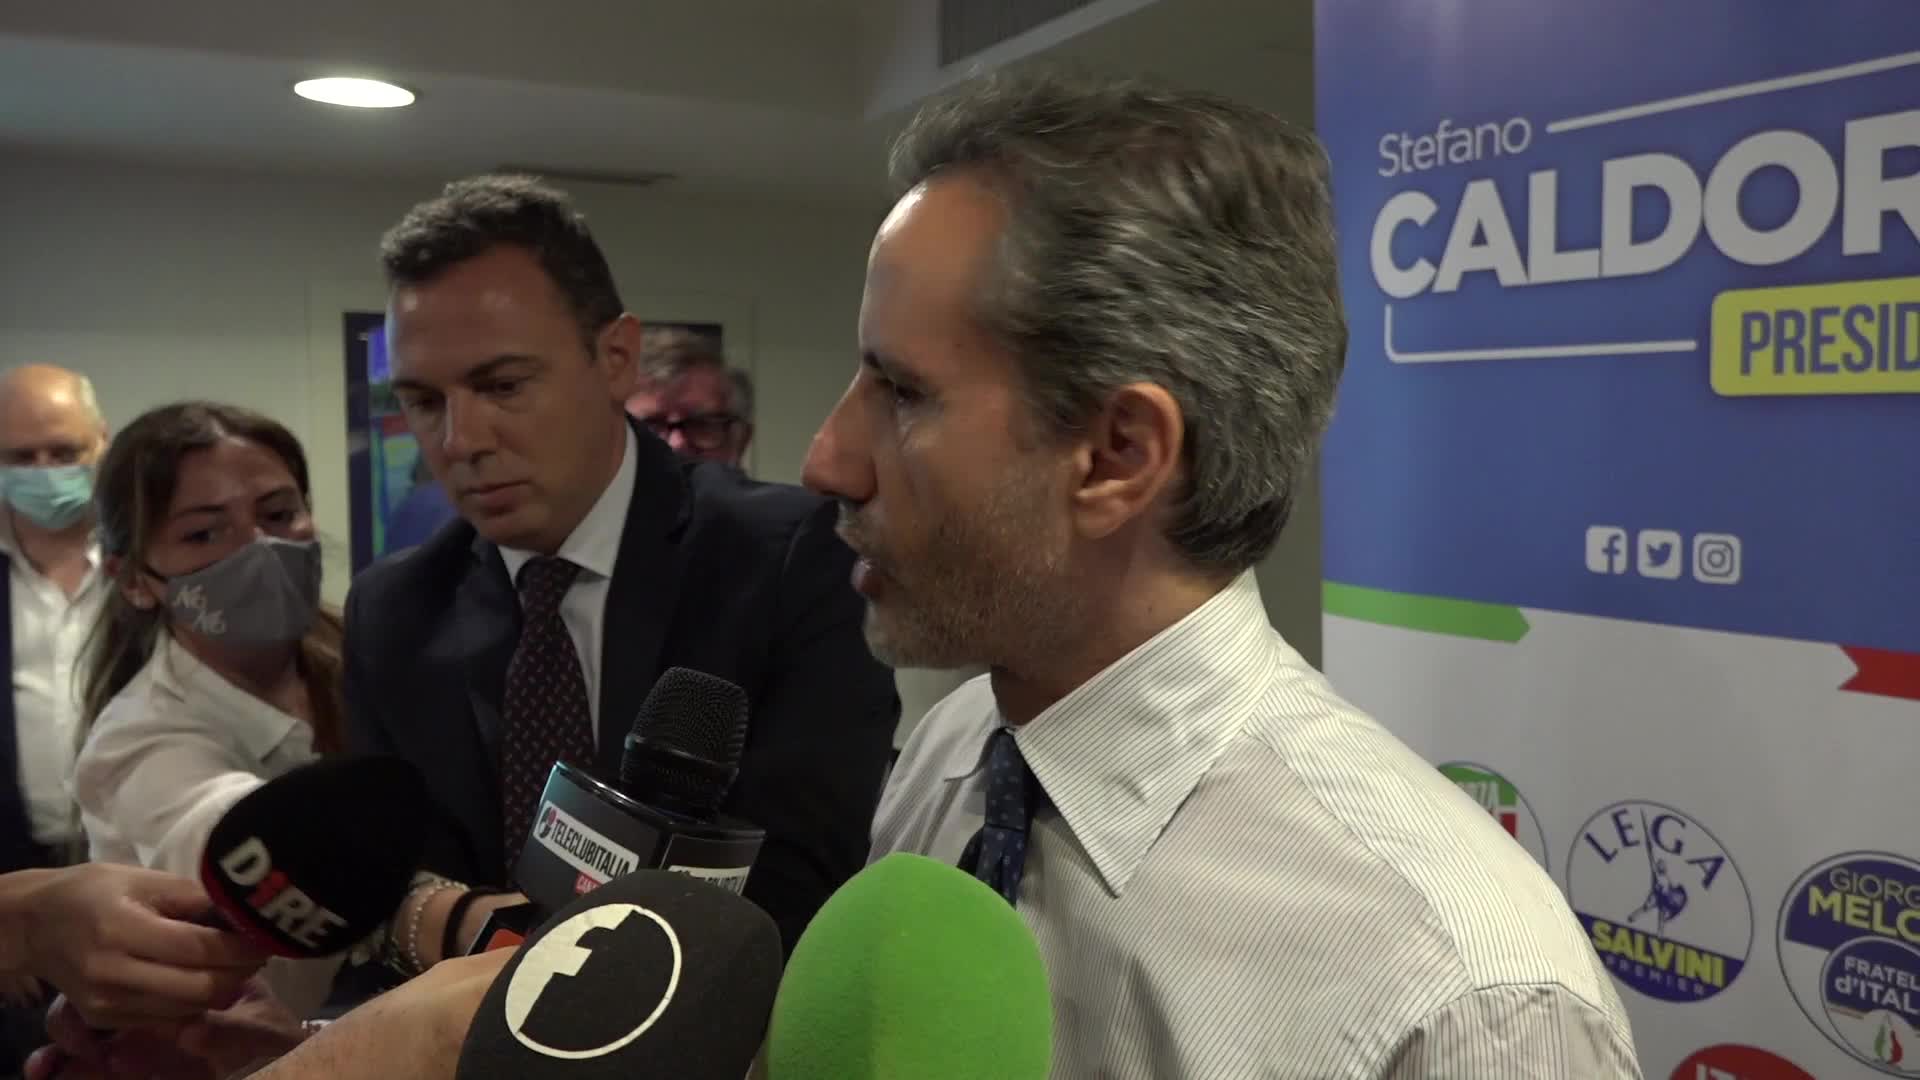 Regionali, Stefano Caldoro apre la sua campagna elettorale